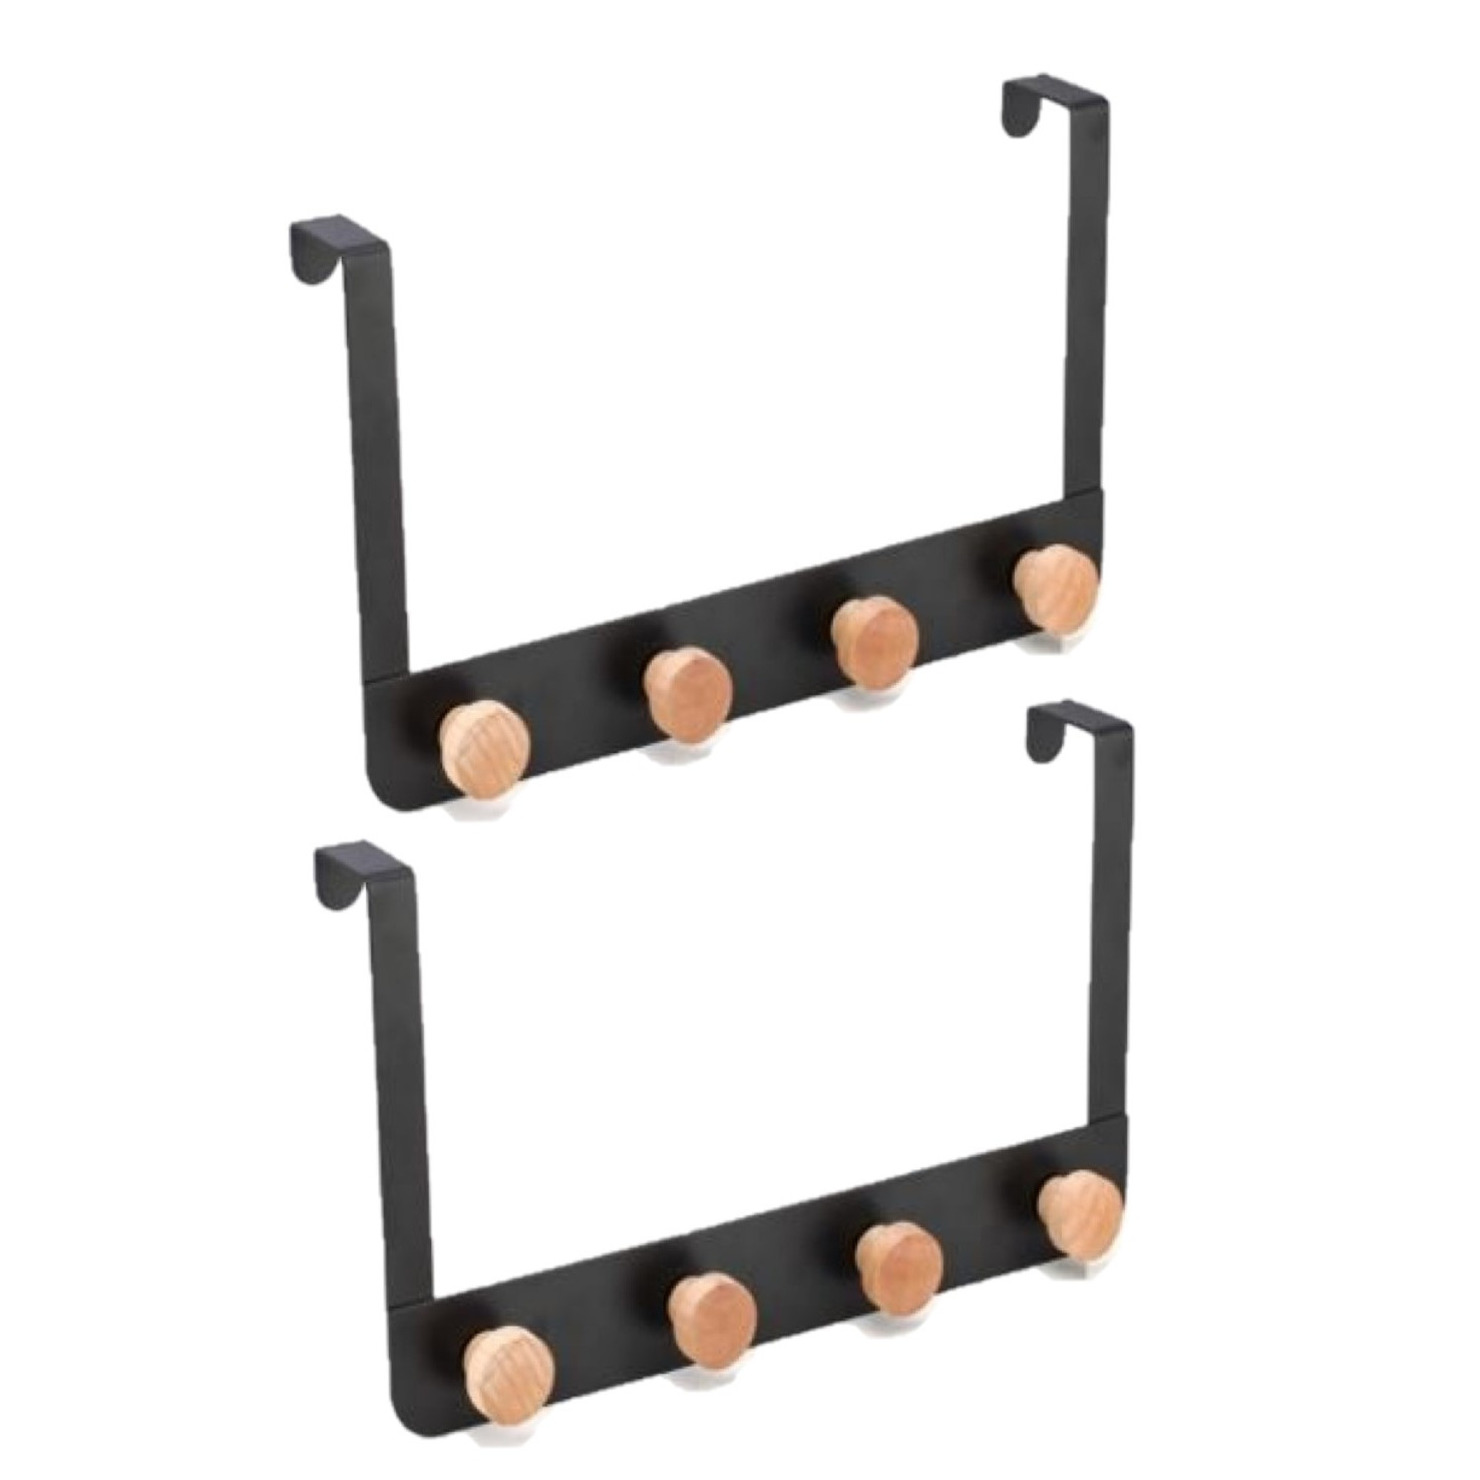 2x stuks badkamerdeur-kastdeur kapstokken zwart met 4 houten haken 35 cm